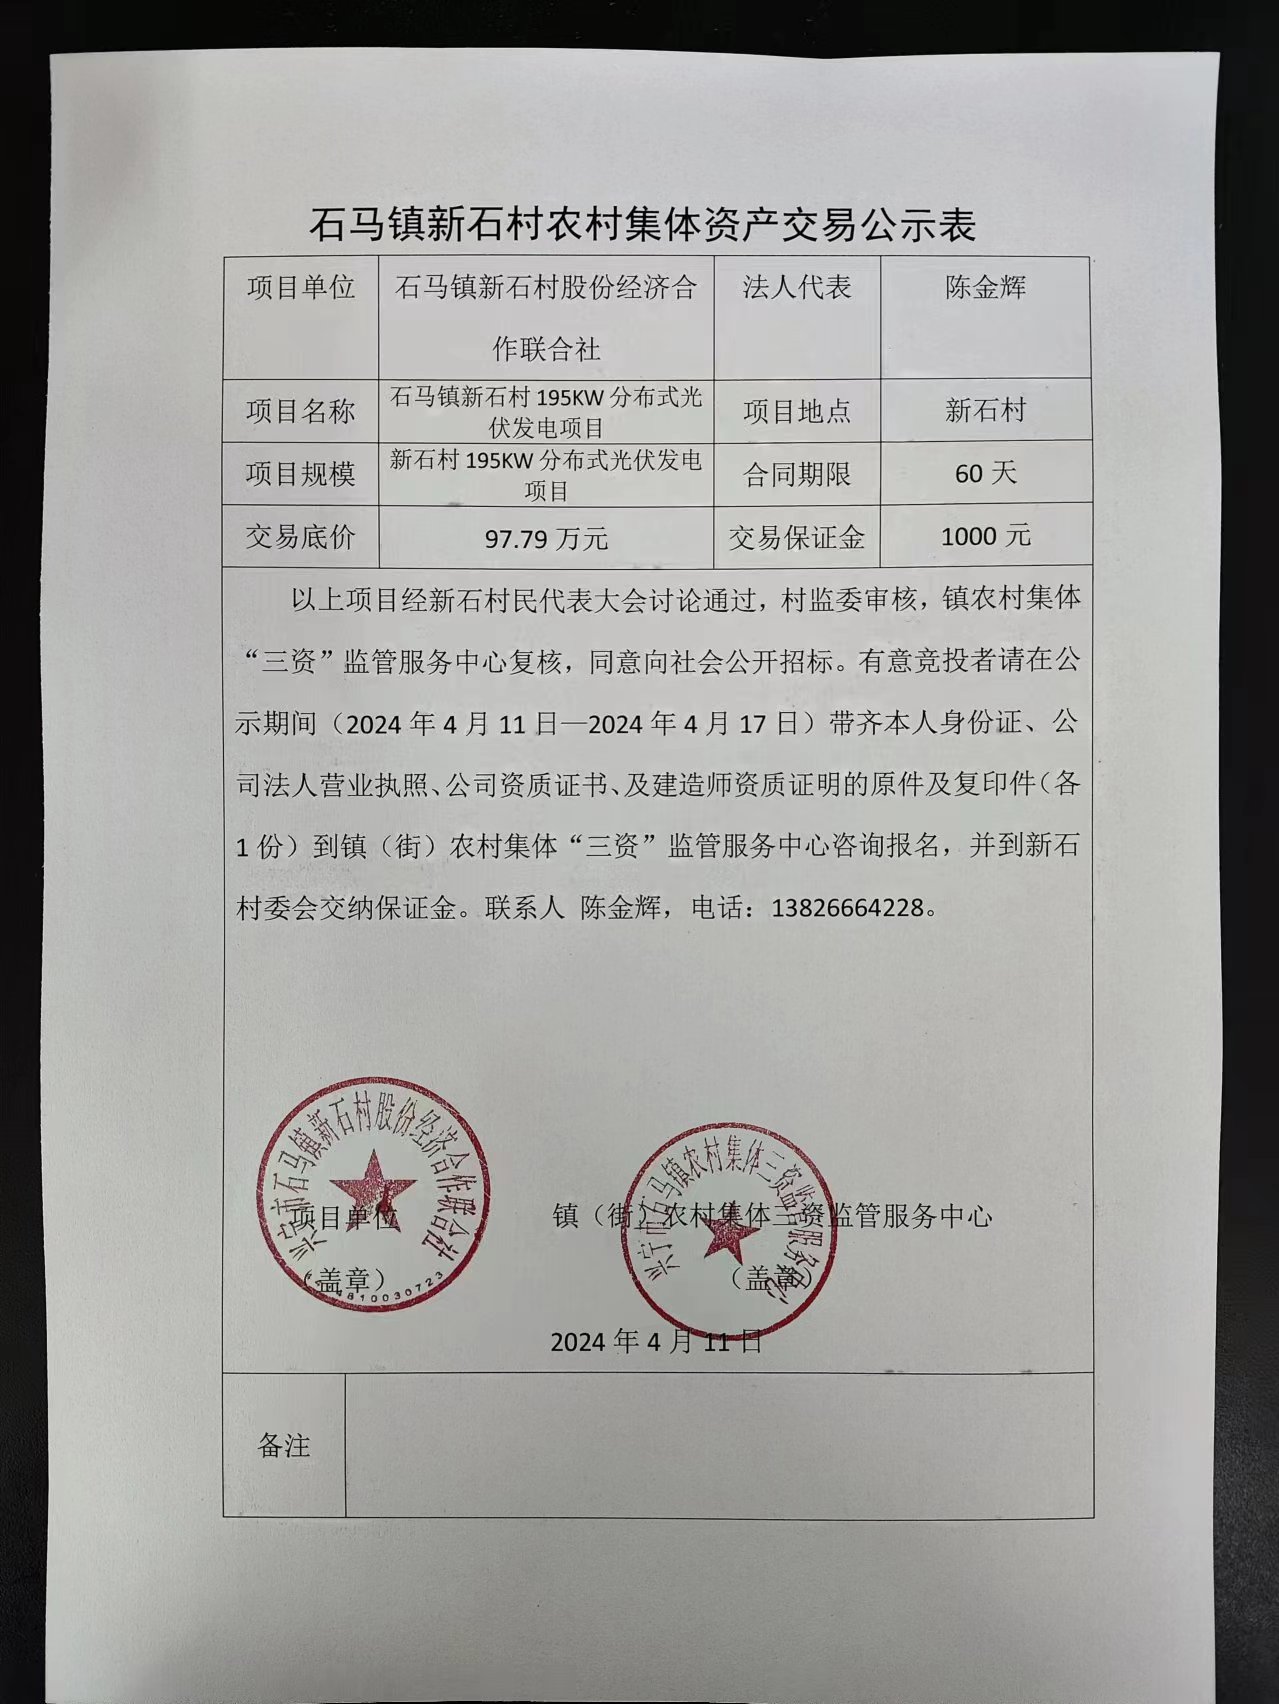 石马镇新石村农村集体资产交易公示表2024.4.11.jpg